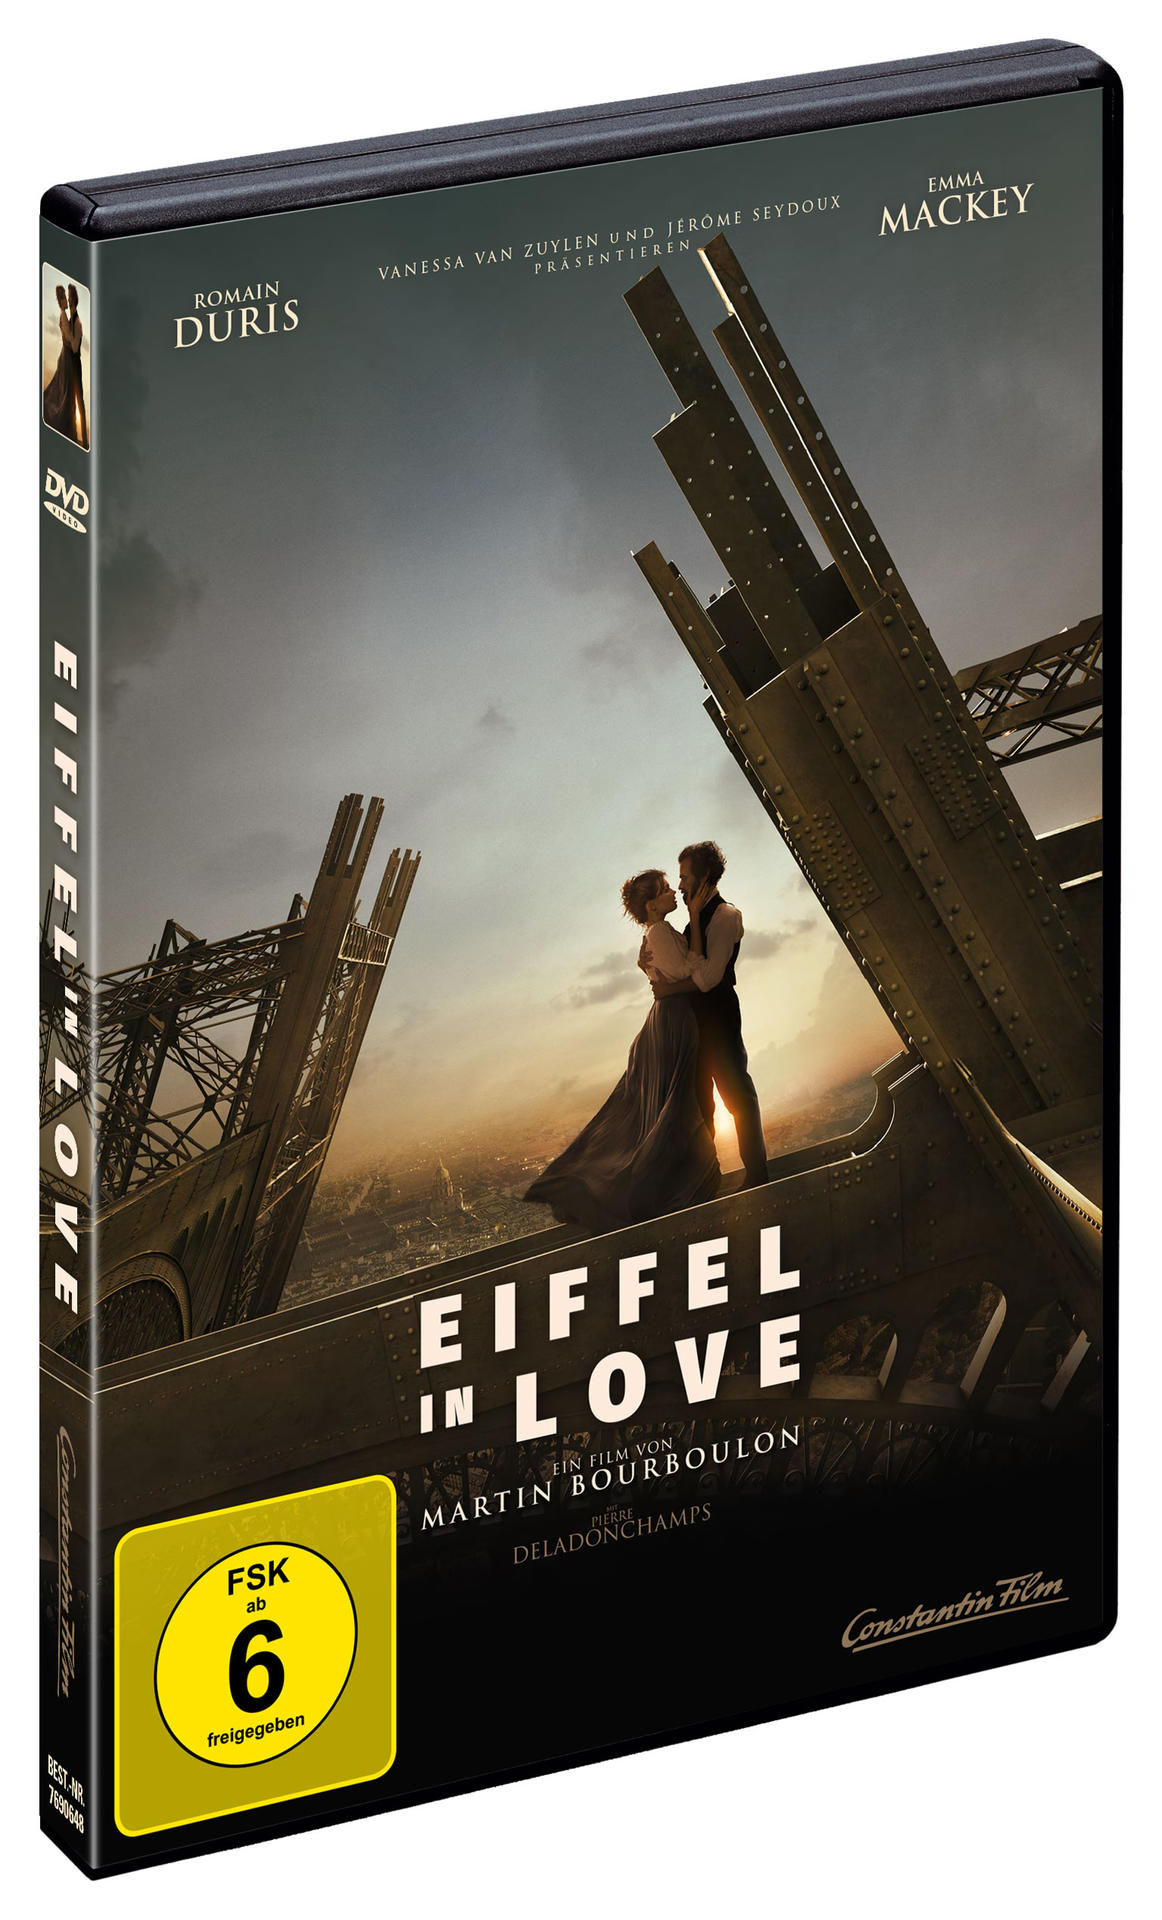 Eiffel DVD Love in